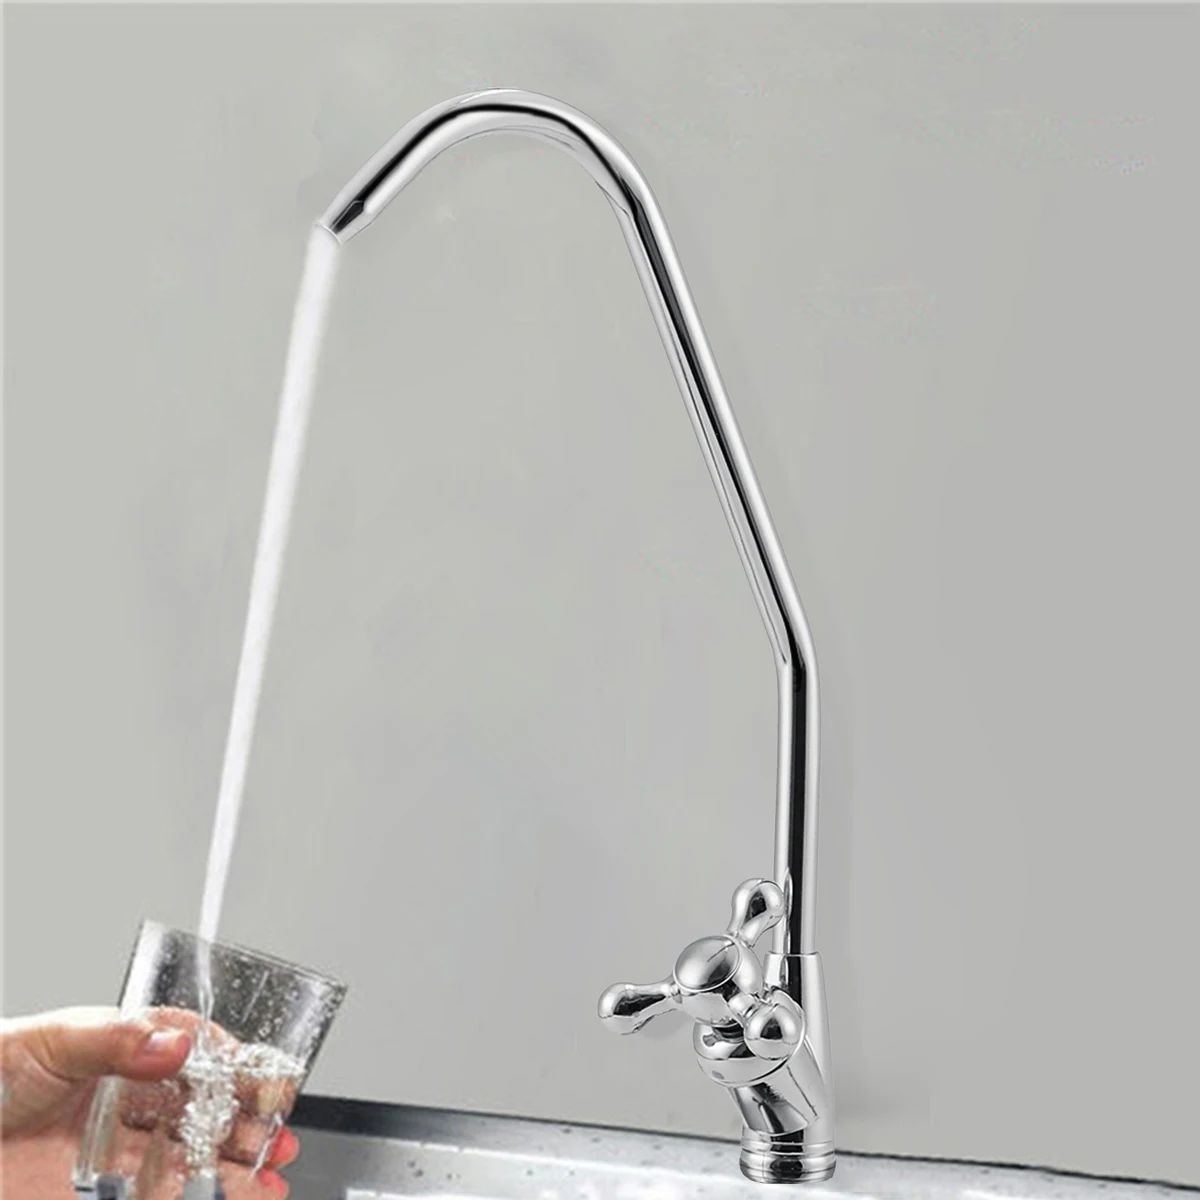 Хромированная отделка обратный осмос питьевой воды фильтр раковина кран с одной ручкой очиститель воды кран подходит для кухни